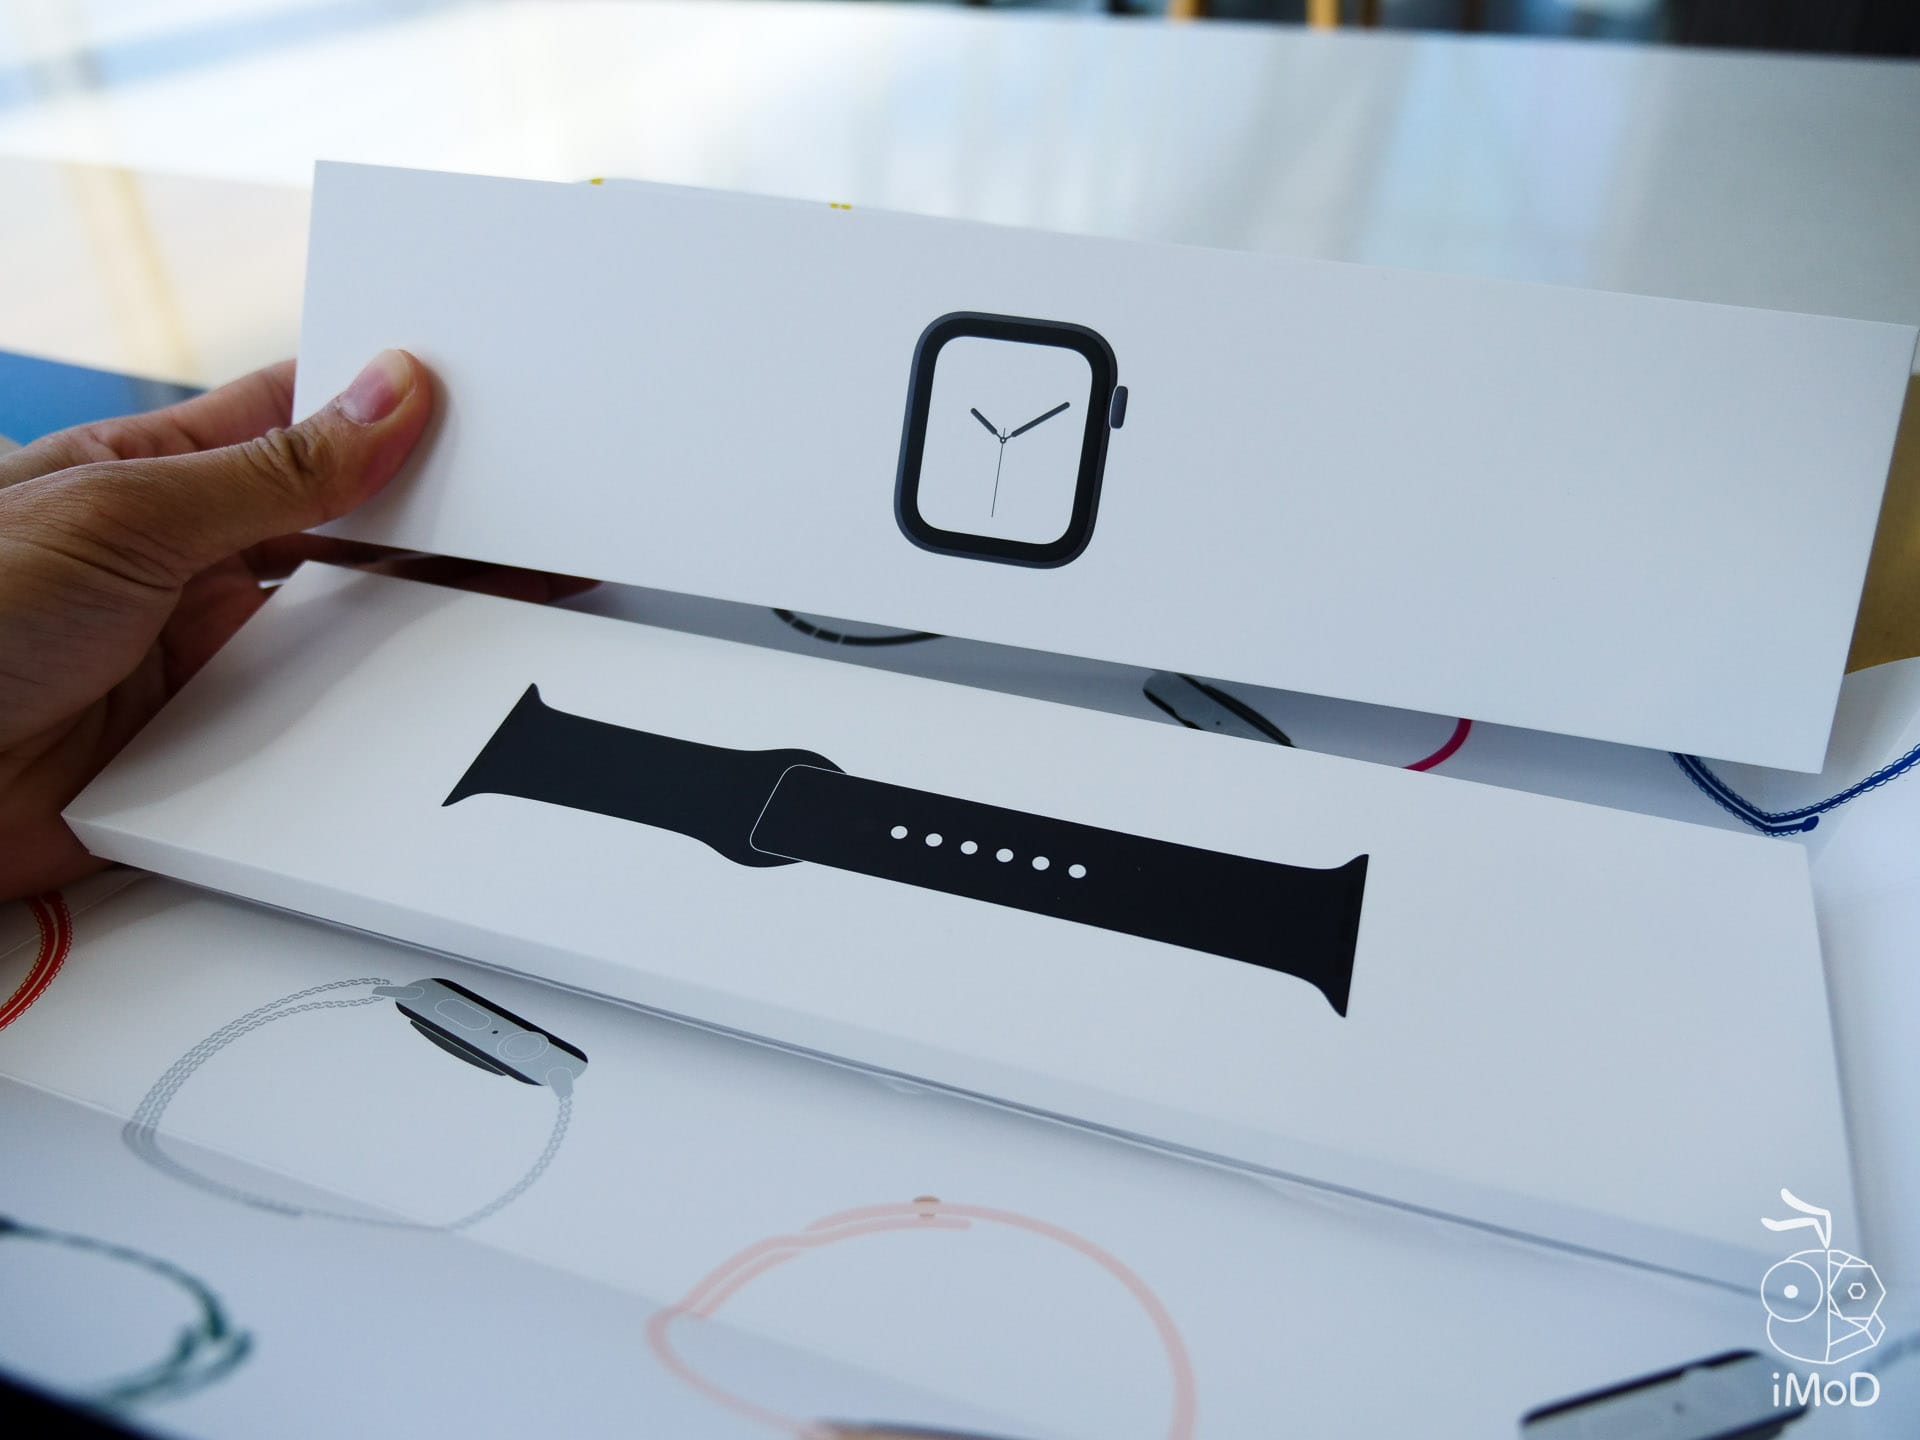 Apple Watch Series 4 Cellular Aluminium Unbox 1177042